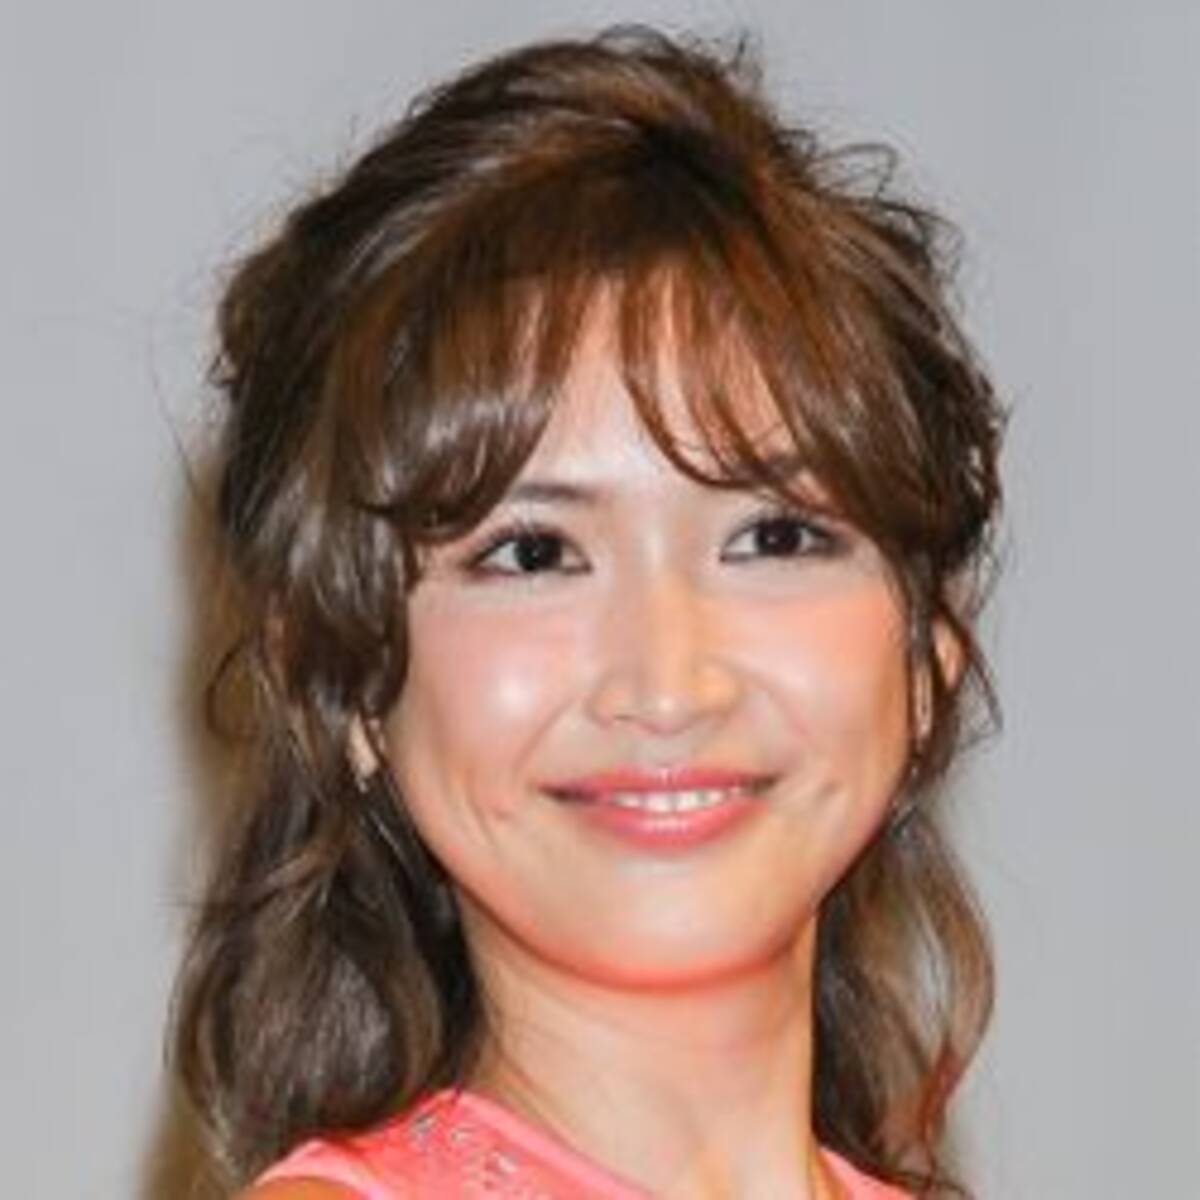 紗栄子が次男の横顔写真を公開 イケメン確実 と女性たちが熱視線 19年2月22日 エキサイトニュース